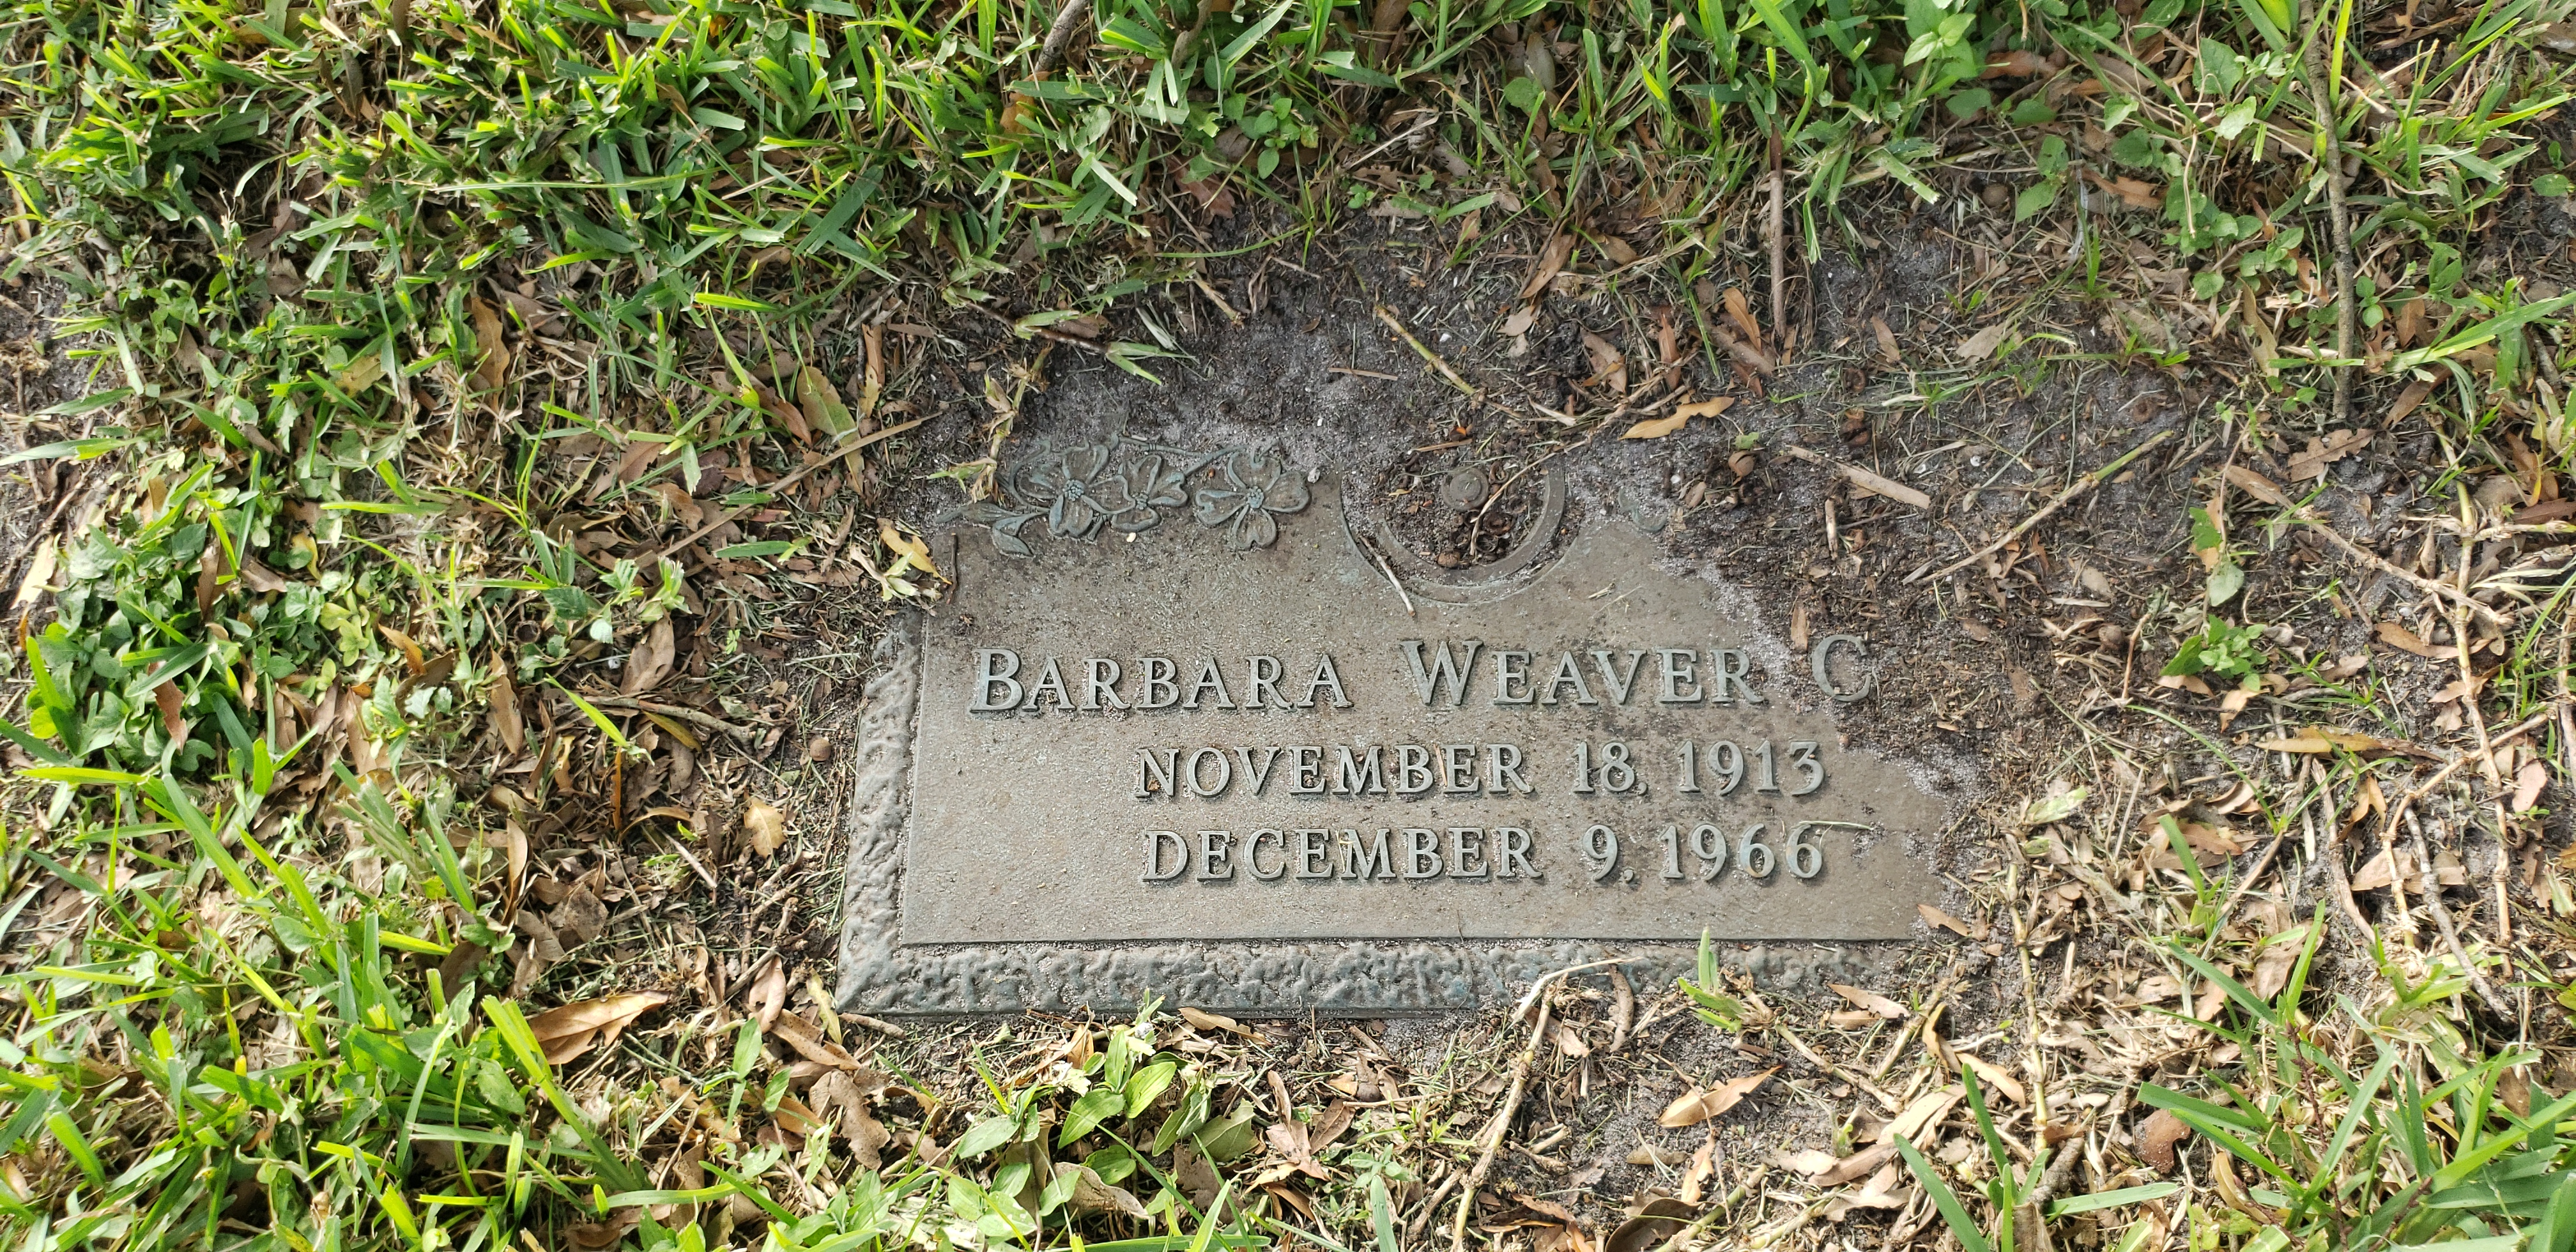 Barbara Weaver C